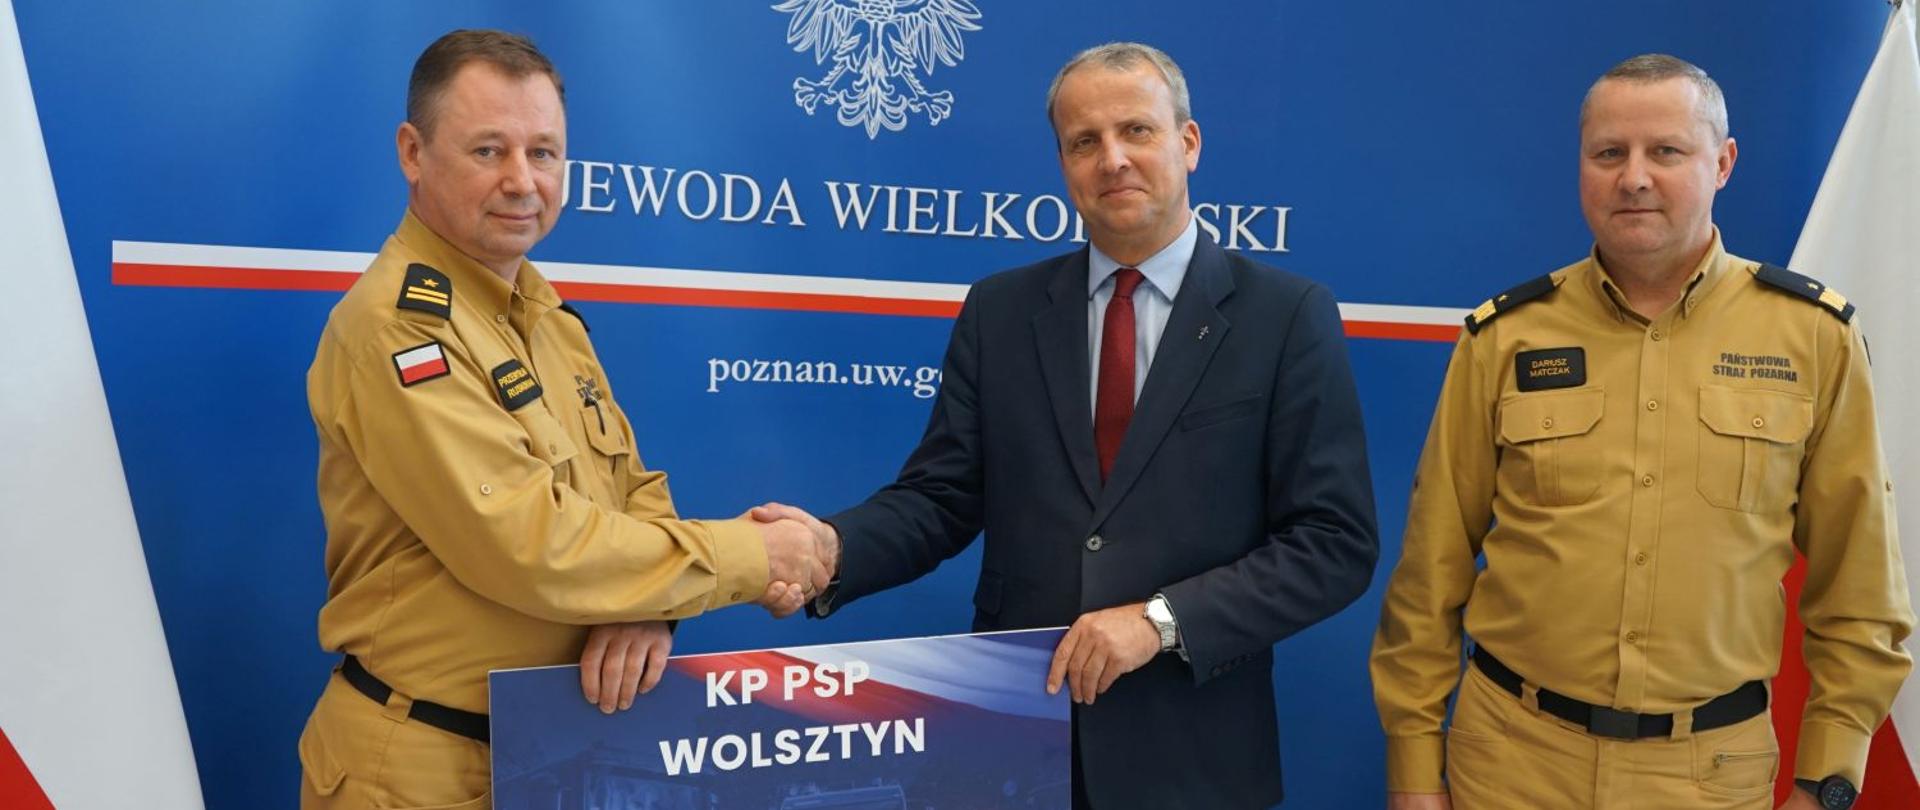 Wojewoda Wielkopolski oraz Wielkopolski Komendant Wojewódzki PSP wręczają promesę Komendanto Powiatowemu PSP w Wolsztynie.